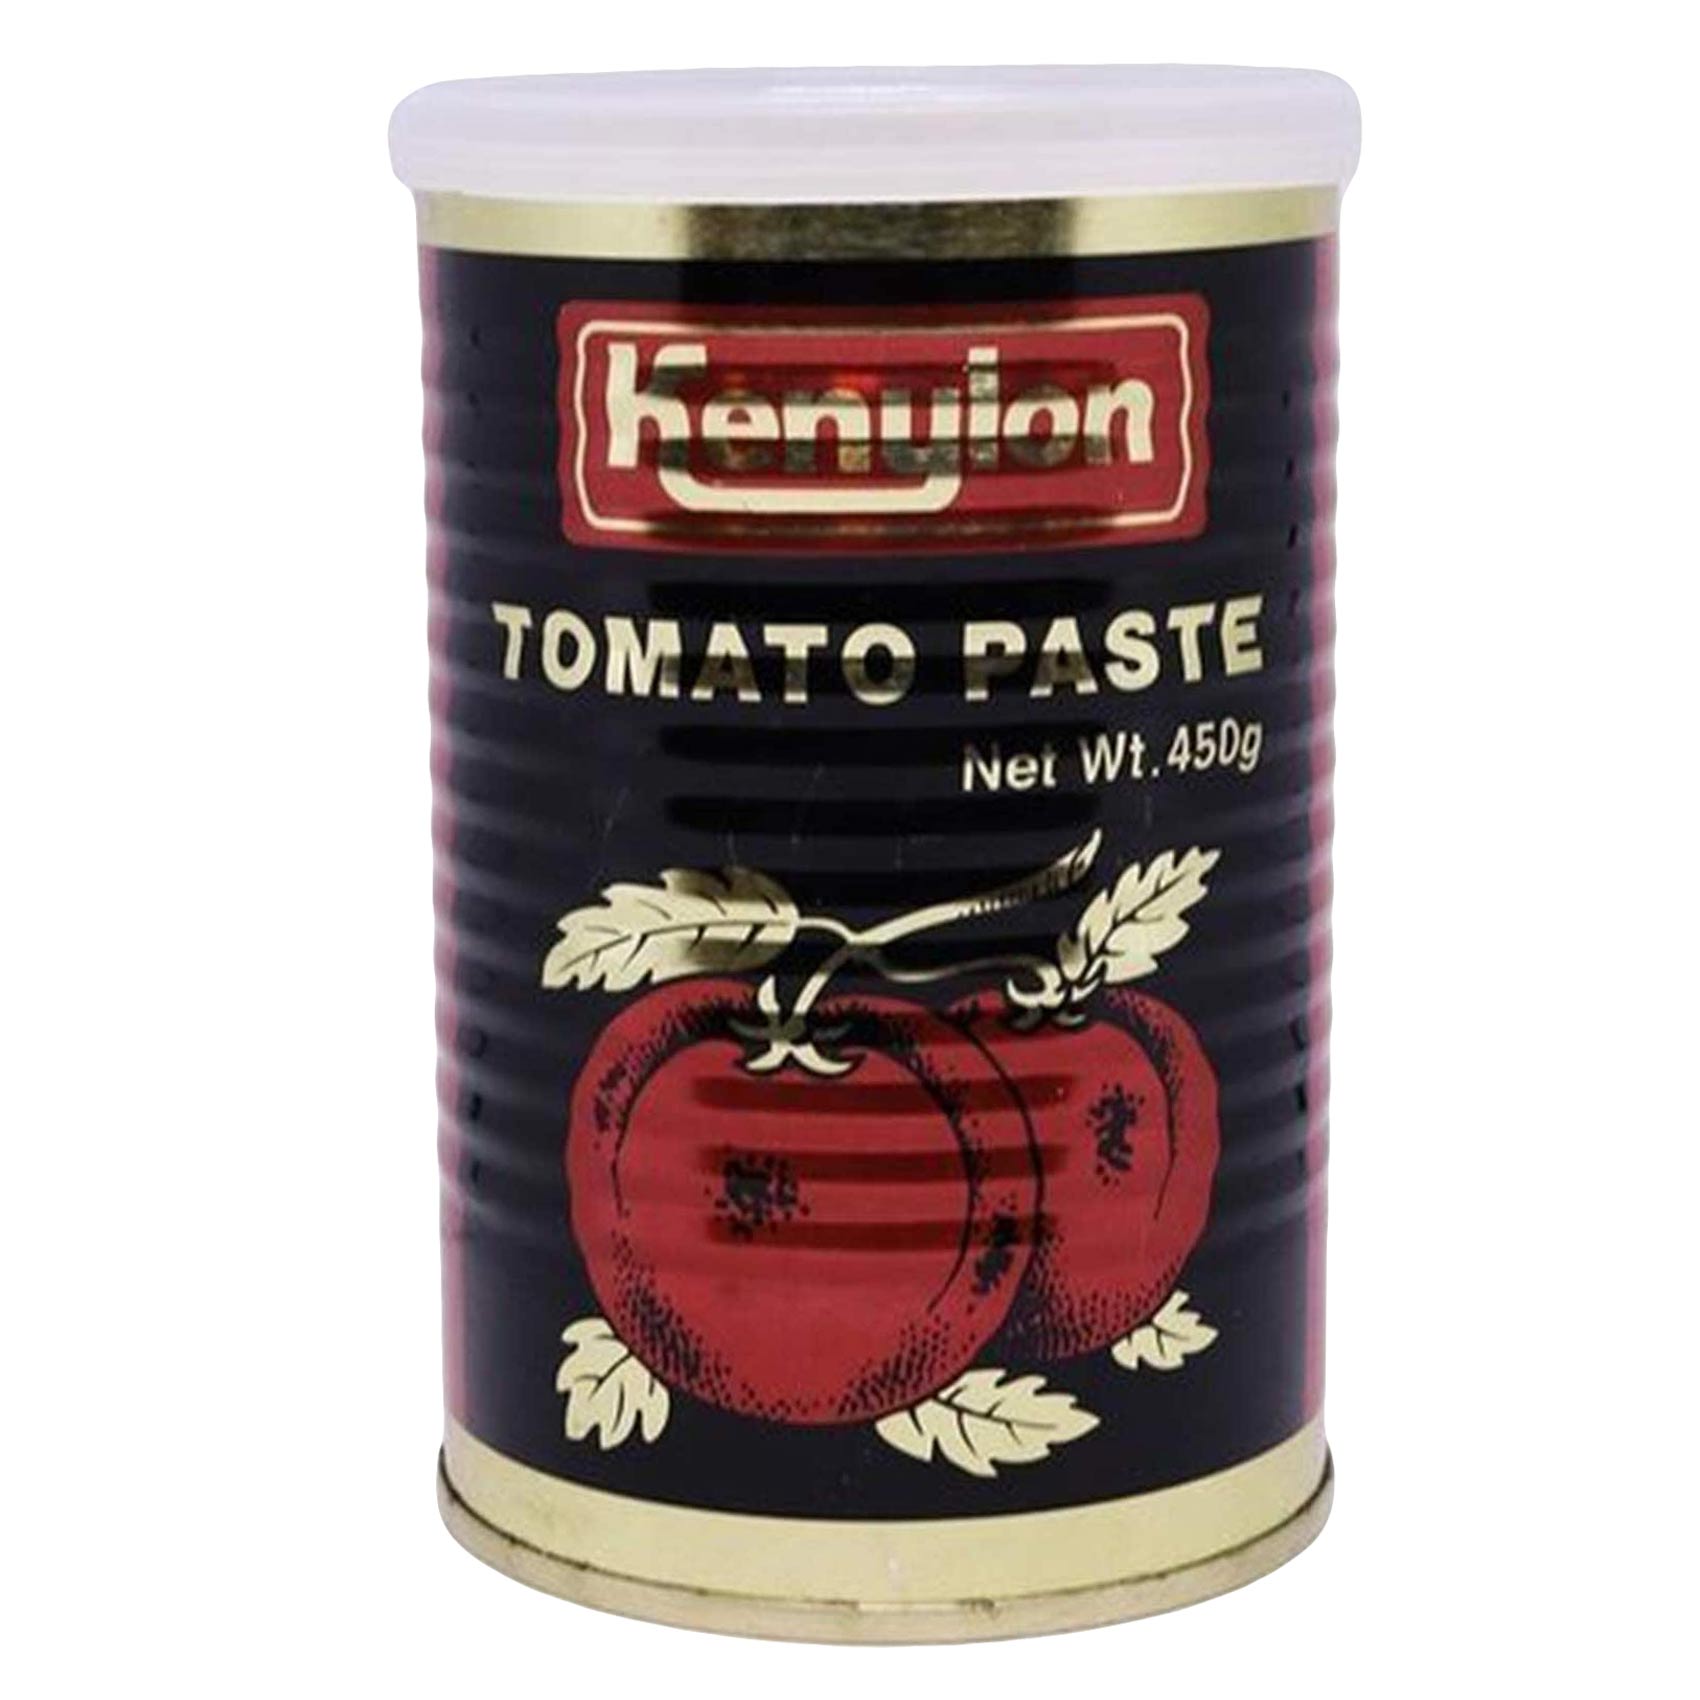 Kenylon Tomato Paste 450g